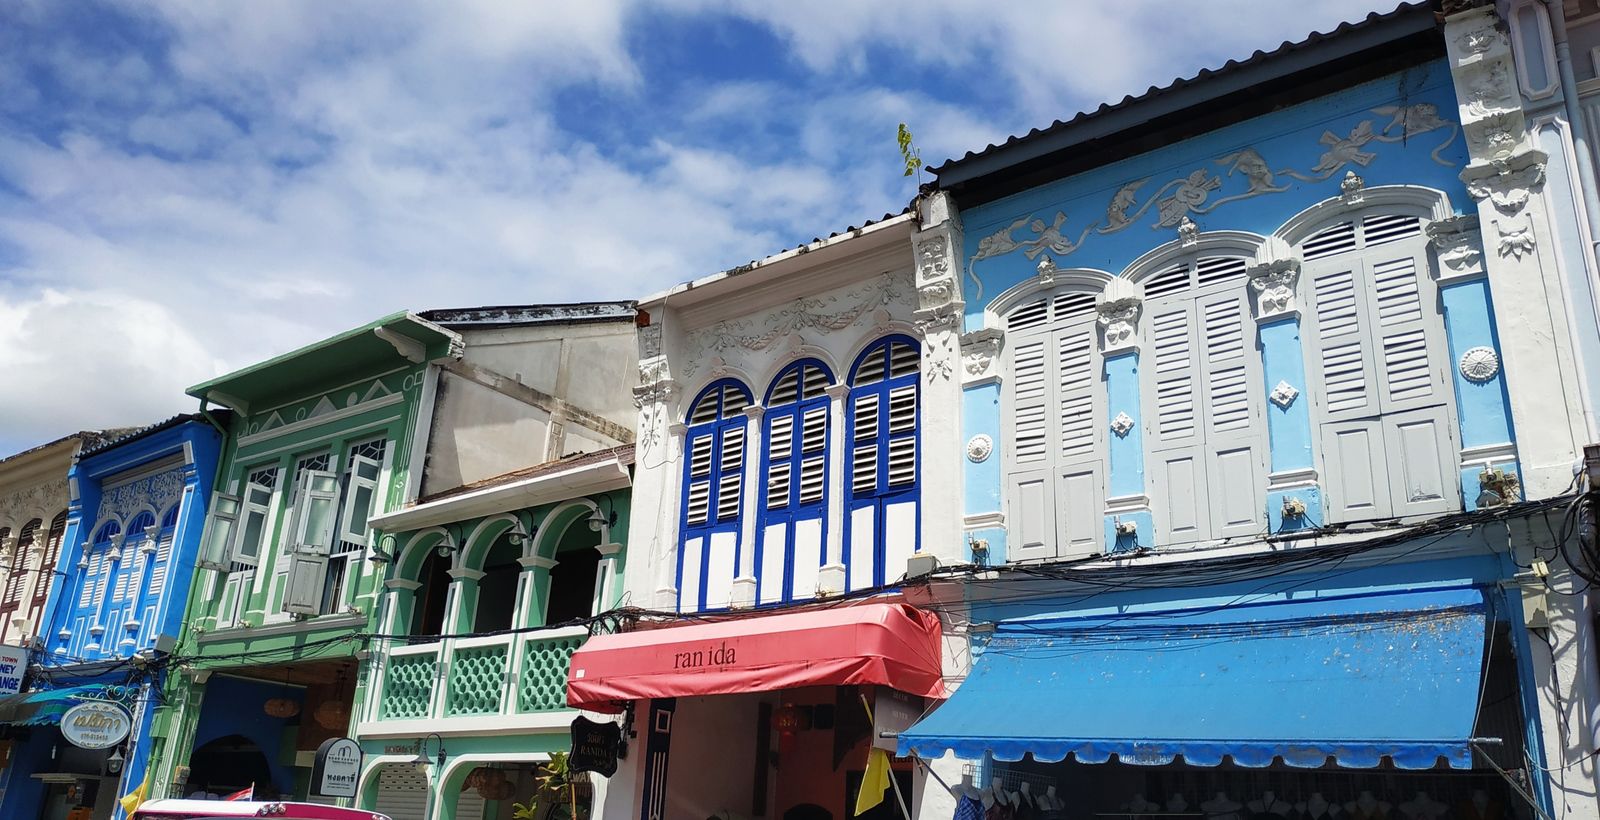 Old phuket town (Thalang road)